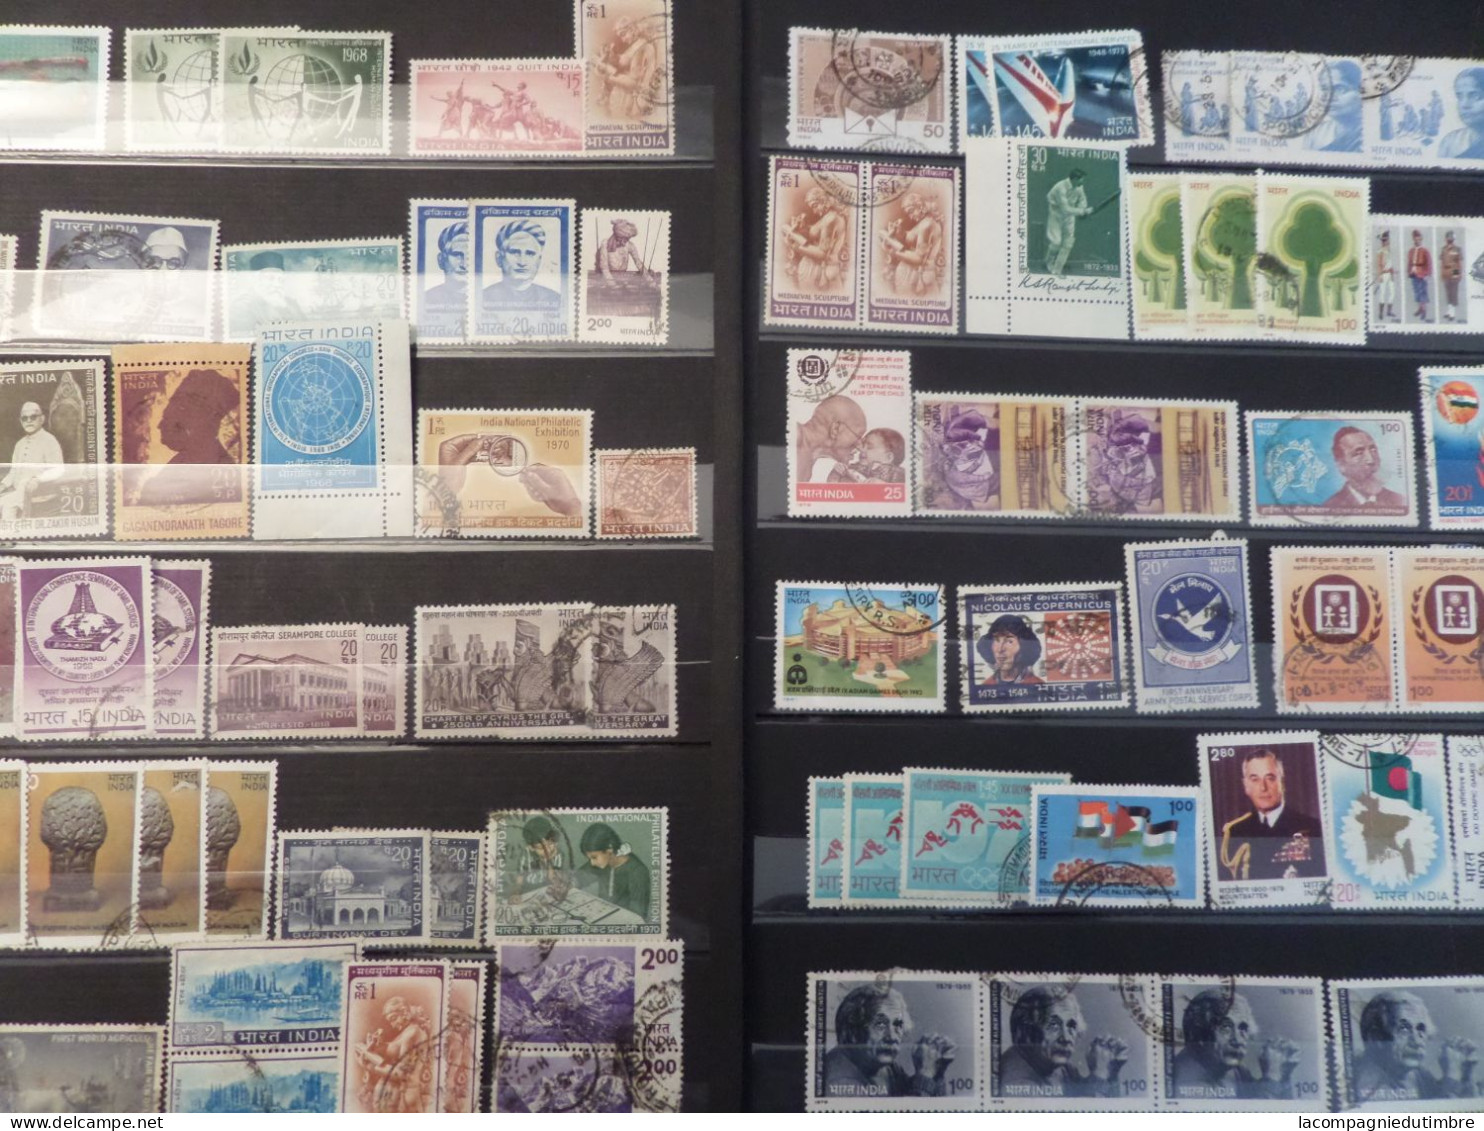 Superbe vrac de milliers de timbres tous pays et toutes périodes neufs/oblitérés. COTE ENORME!!!! A SAISIR!!!!